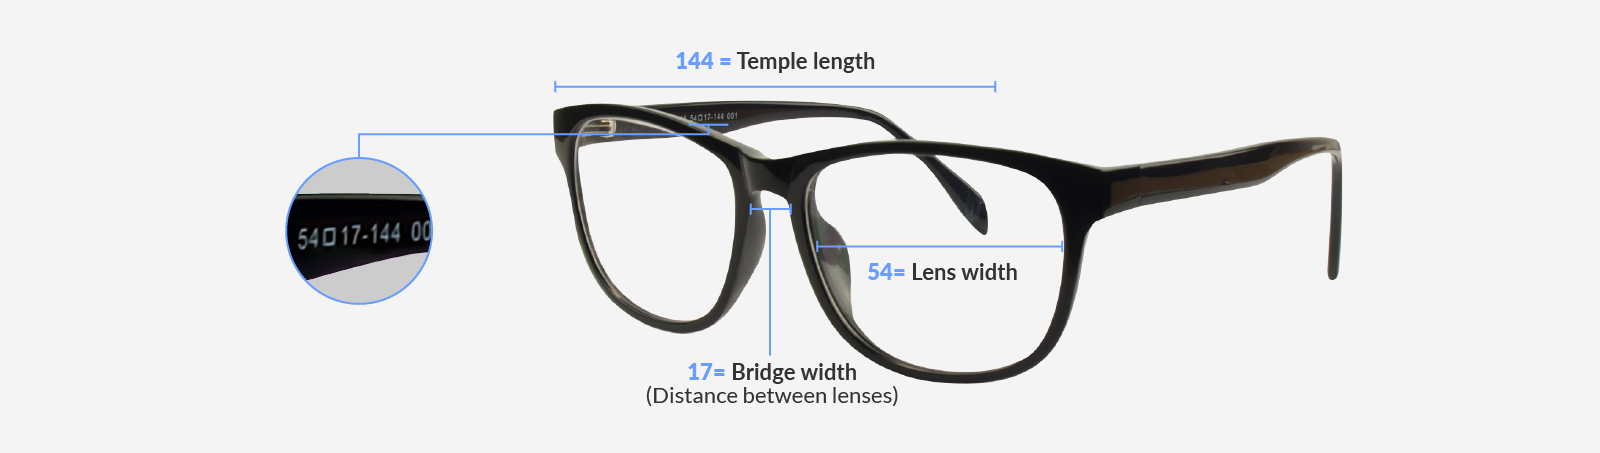 glasses frame measurements